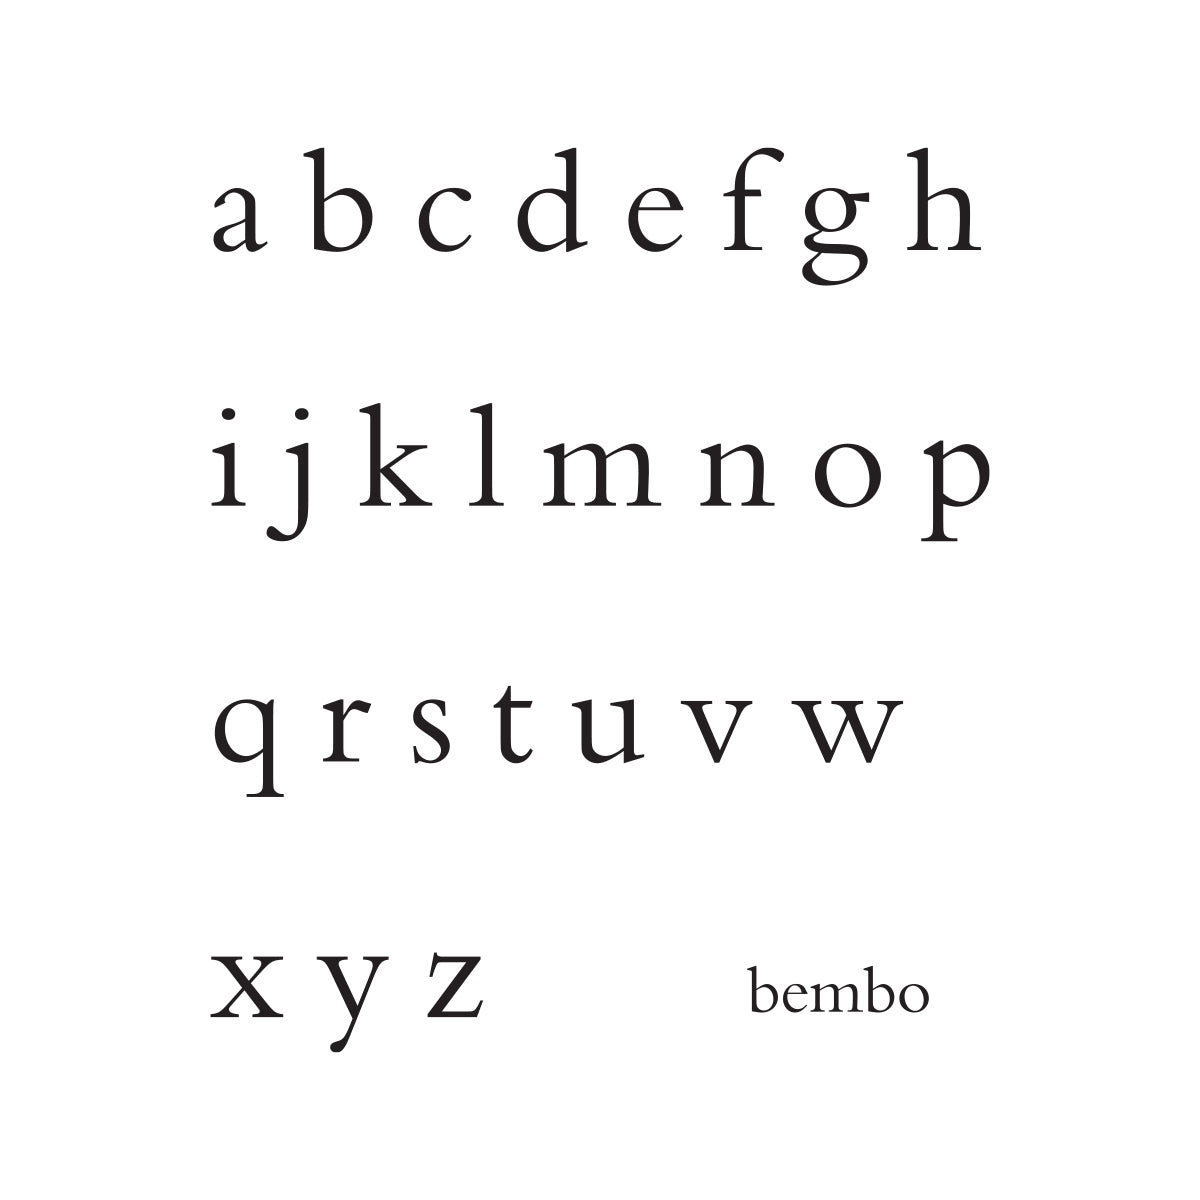 Bembo Written Number-1 Line.